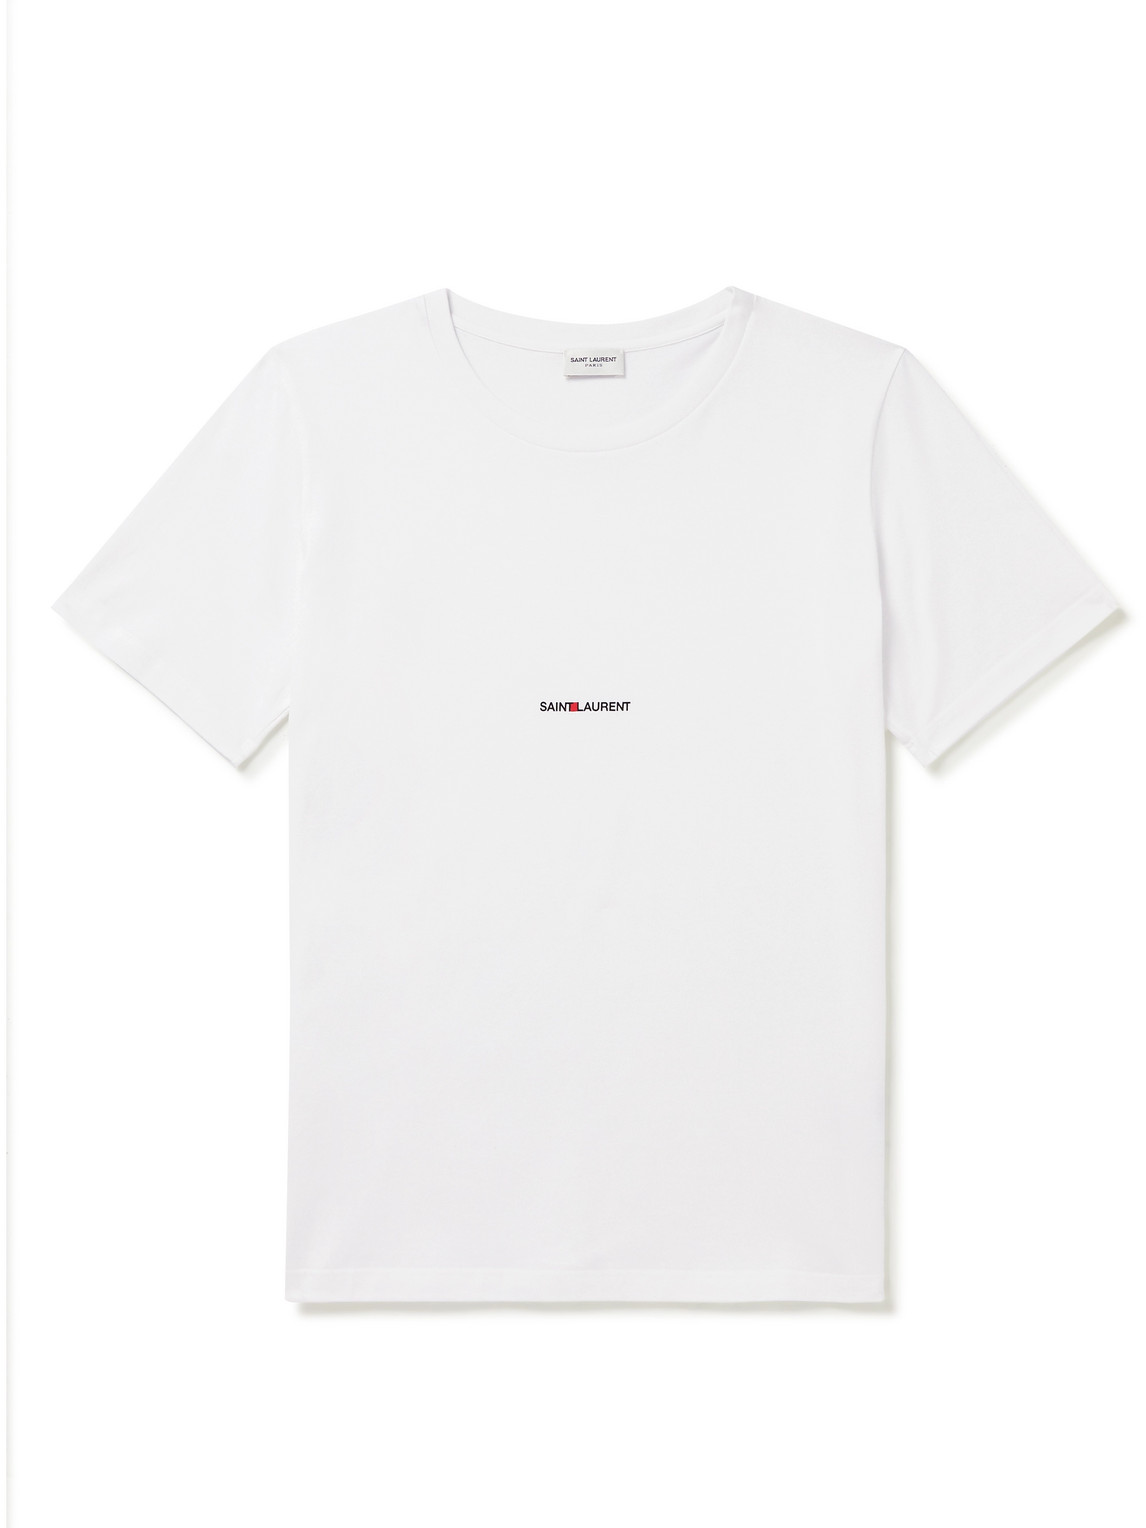 SAINT LAURENT - Logo-Print Cotton-Jersey T-Shirt - Men - White - XXL von SAINT LAURENT